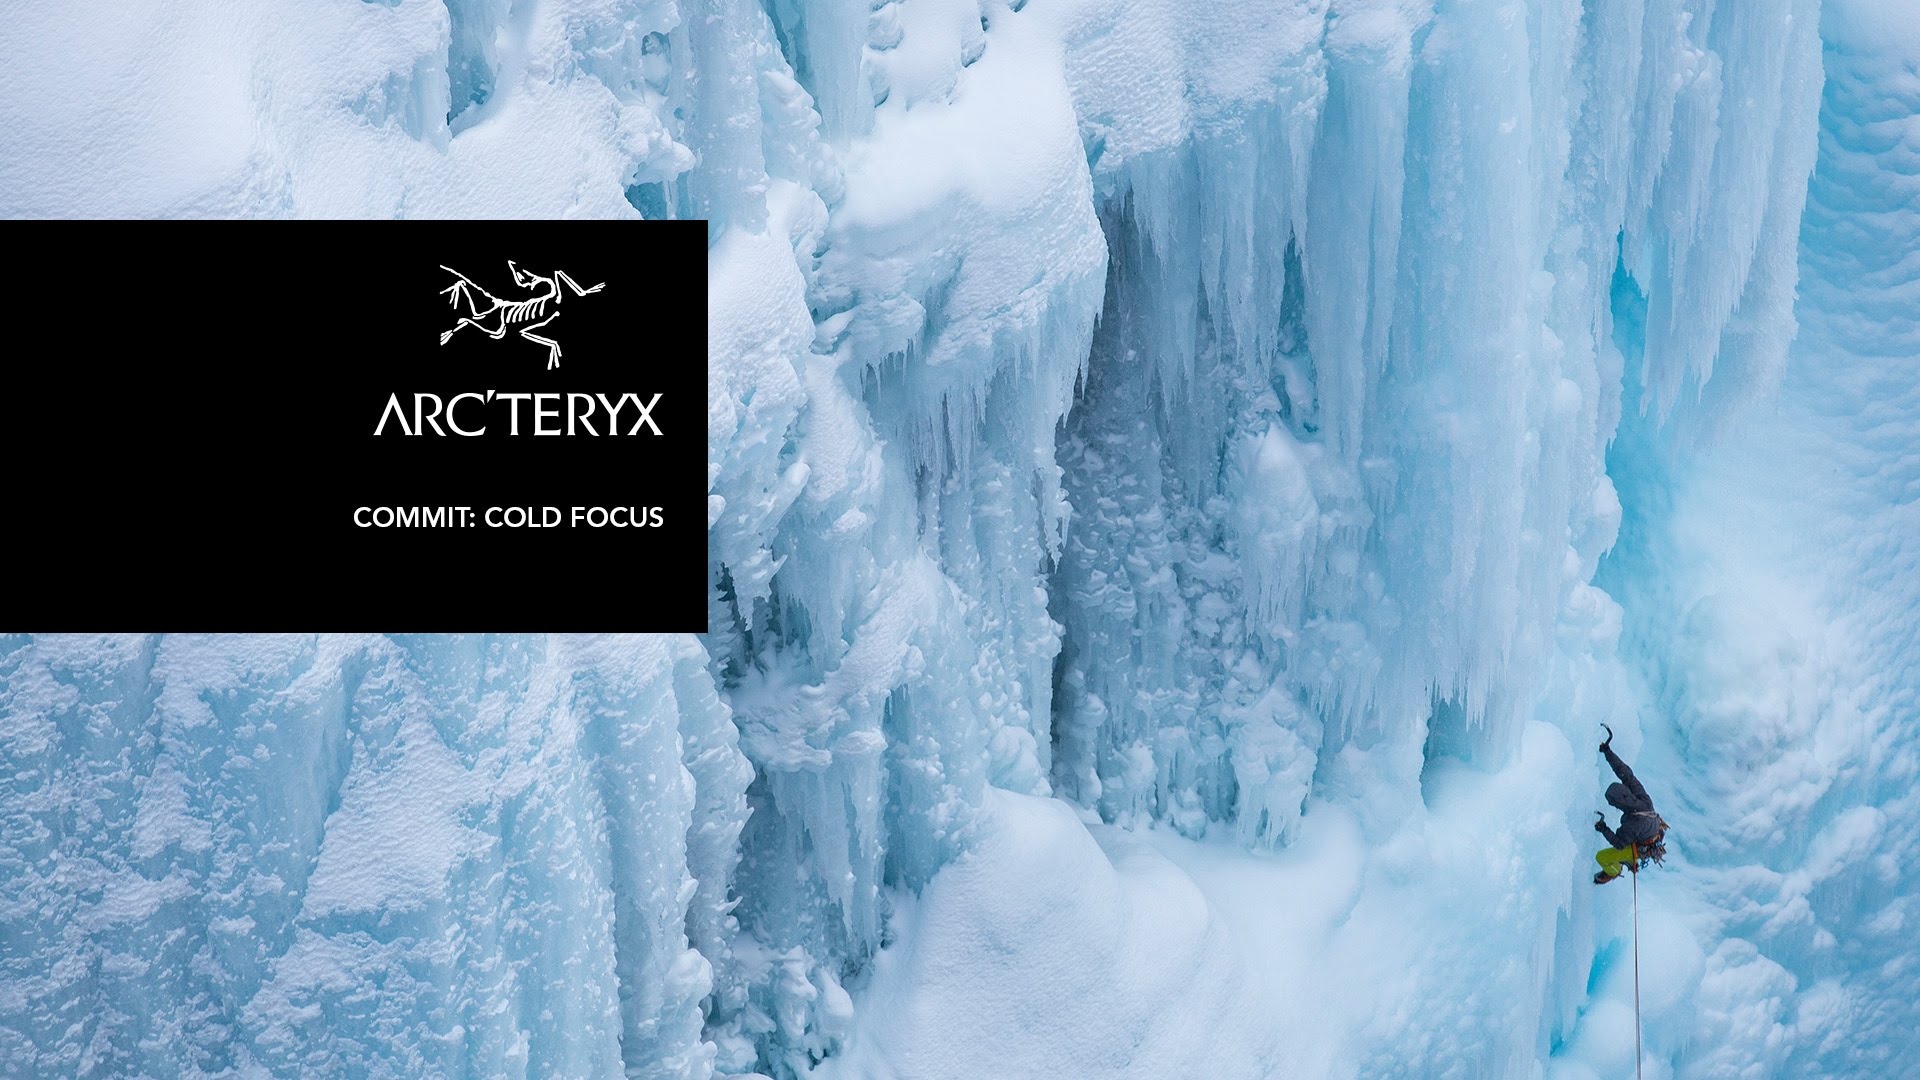 Video, escalada en hielo Cold Focus en 4K